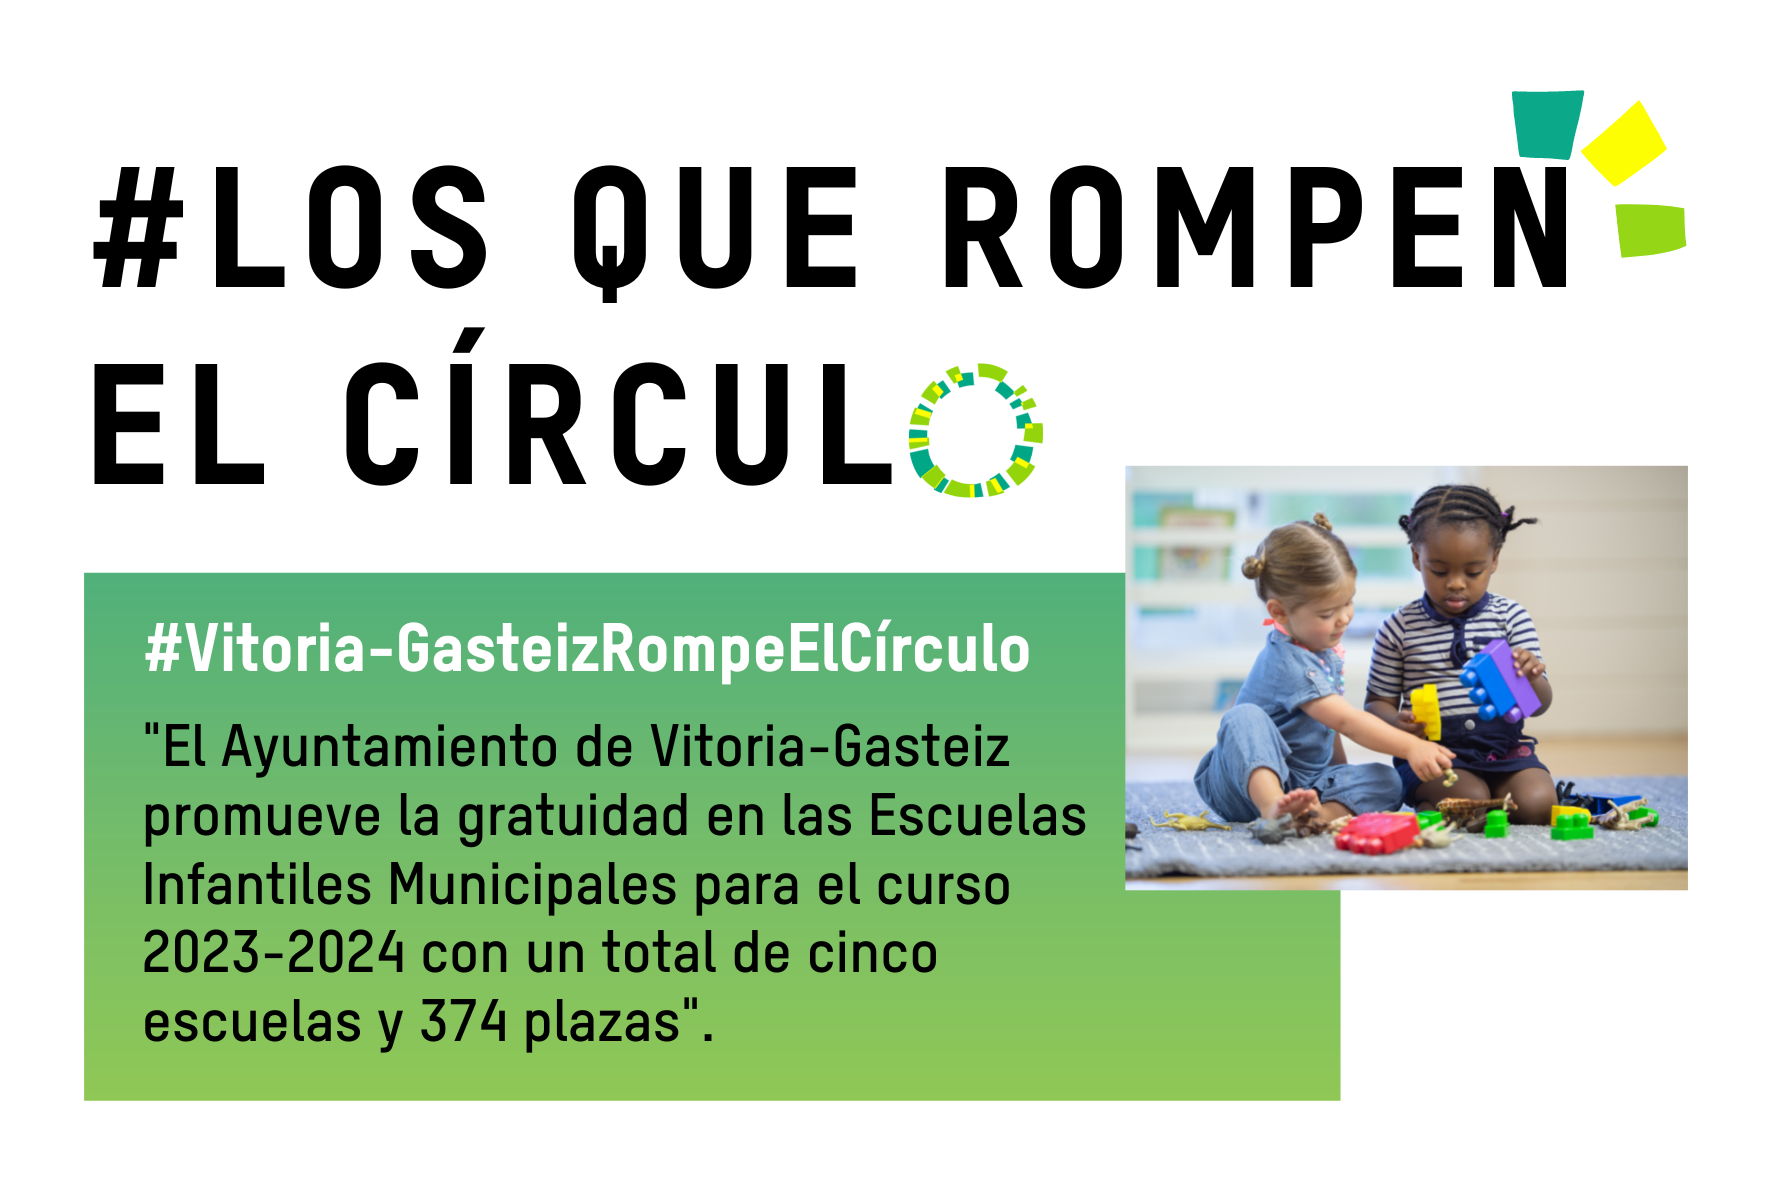 LosQueRompenElCírculo: El Ayuntamiento de Vitoria-Gasteiz avanza en la educación de 0 a 3 años